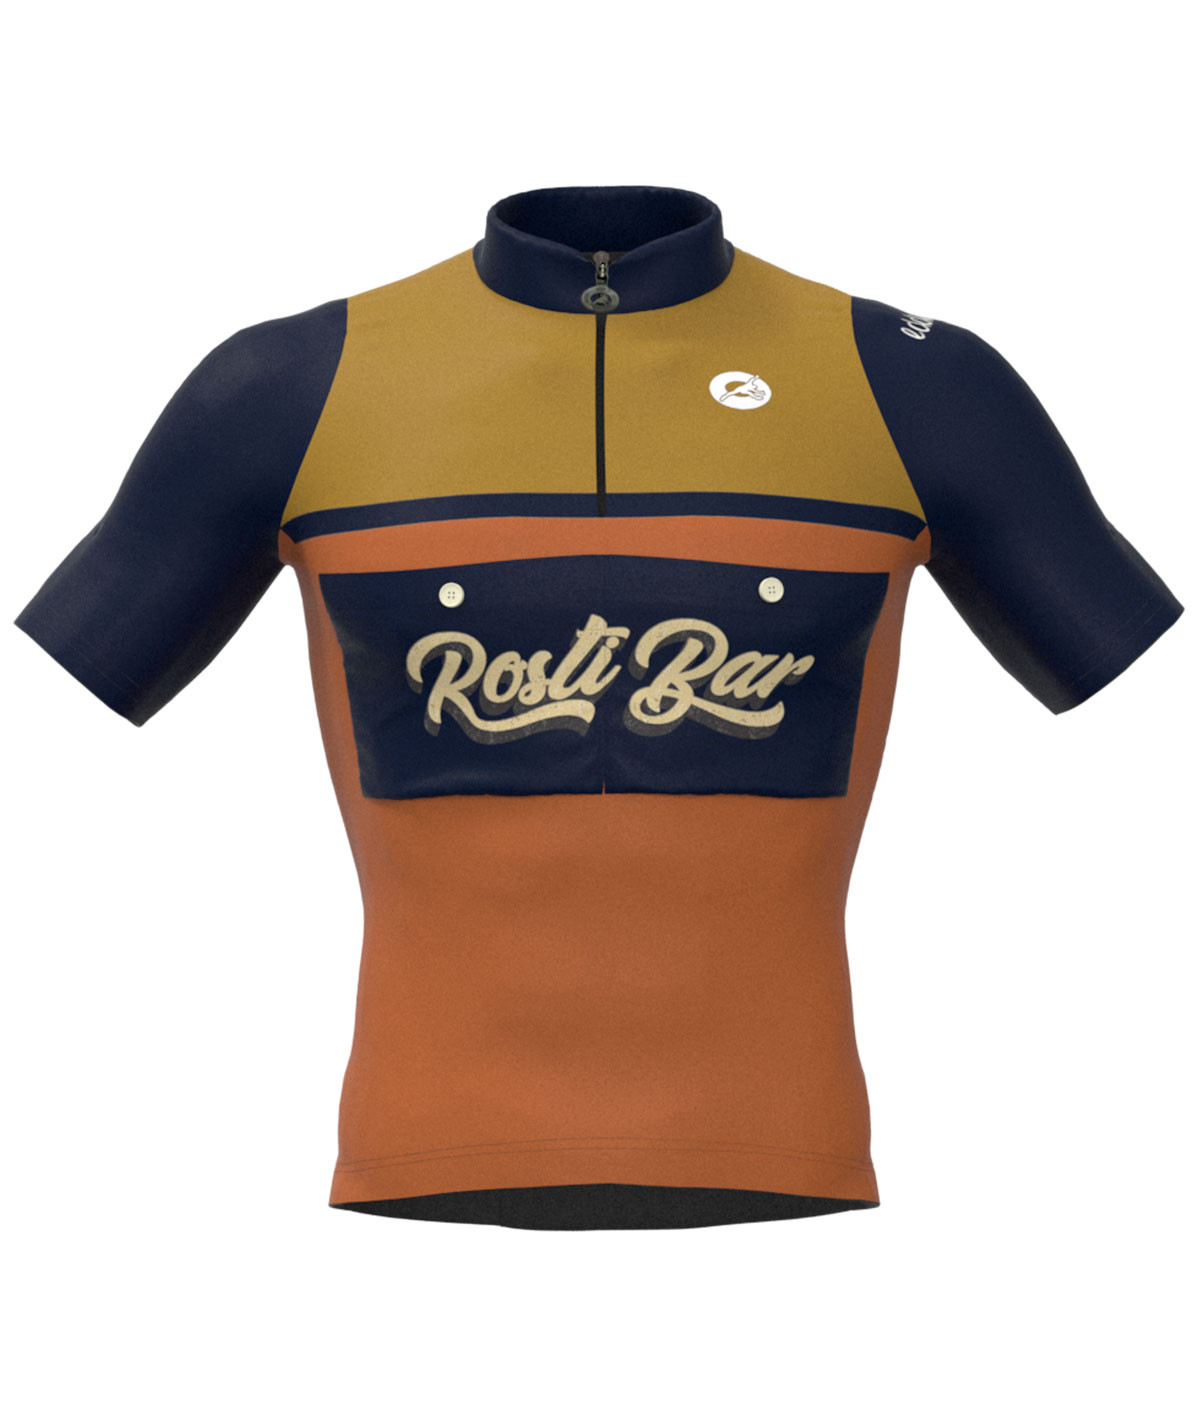 Vintage short sleeved jersey Rosti Bar